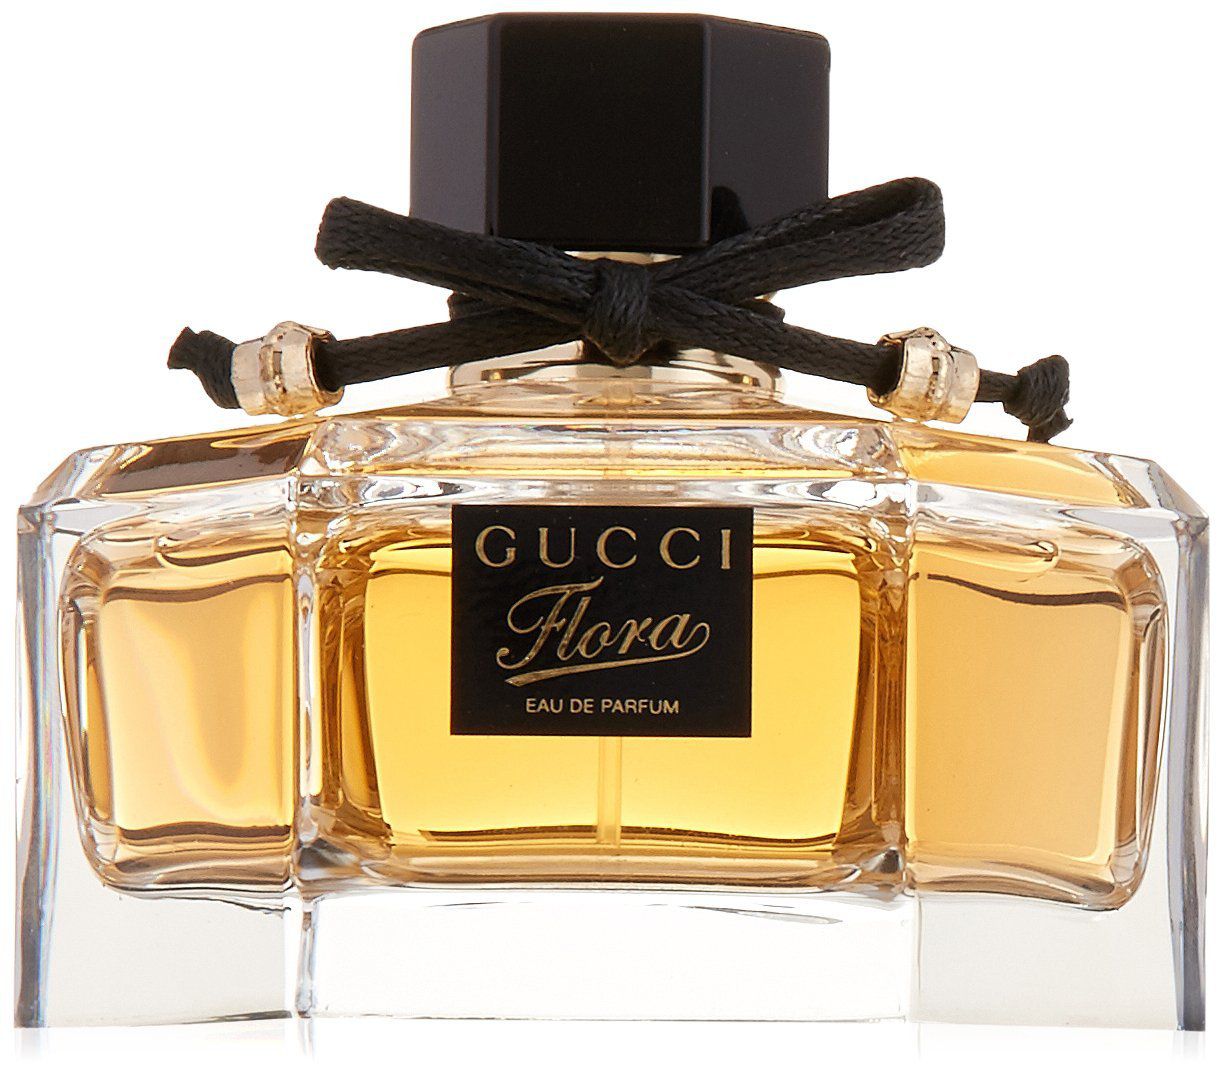 Gucci flora eau de. Flora by Gucci Eau de Parfum. Gucci Flora EDP, 75ml. Gucci Flora by Gucci Eau de Parfum. Flora by Gucci Eau de Parfum 75ml.